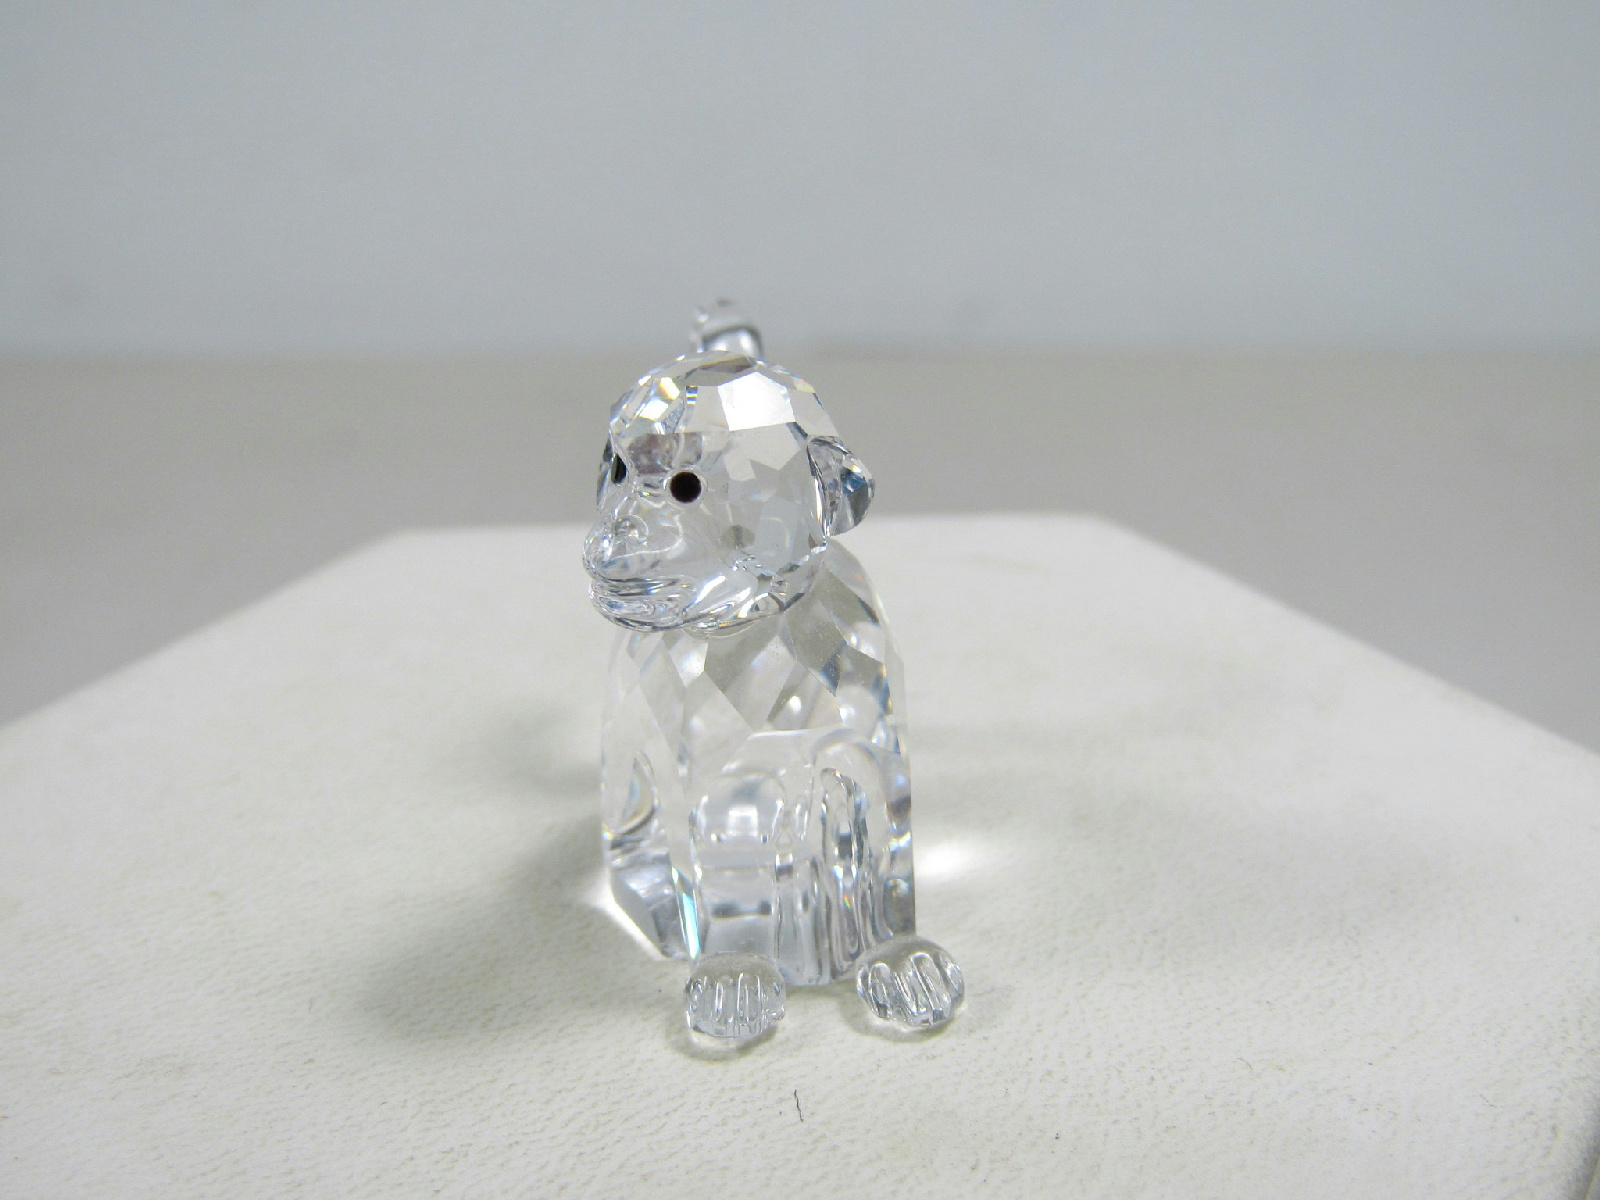 ::Swarovski Crystal Trinket Monkey Small Decoration Figurine in Box